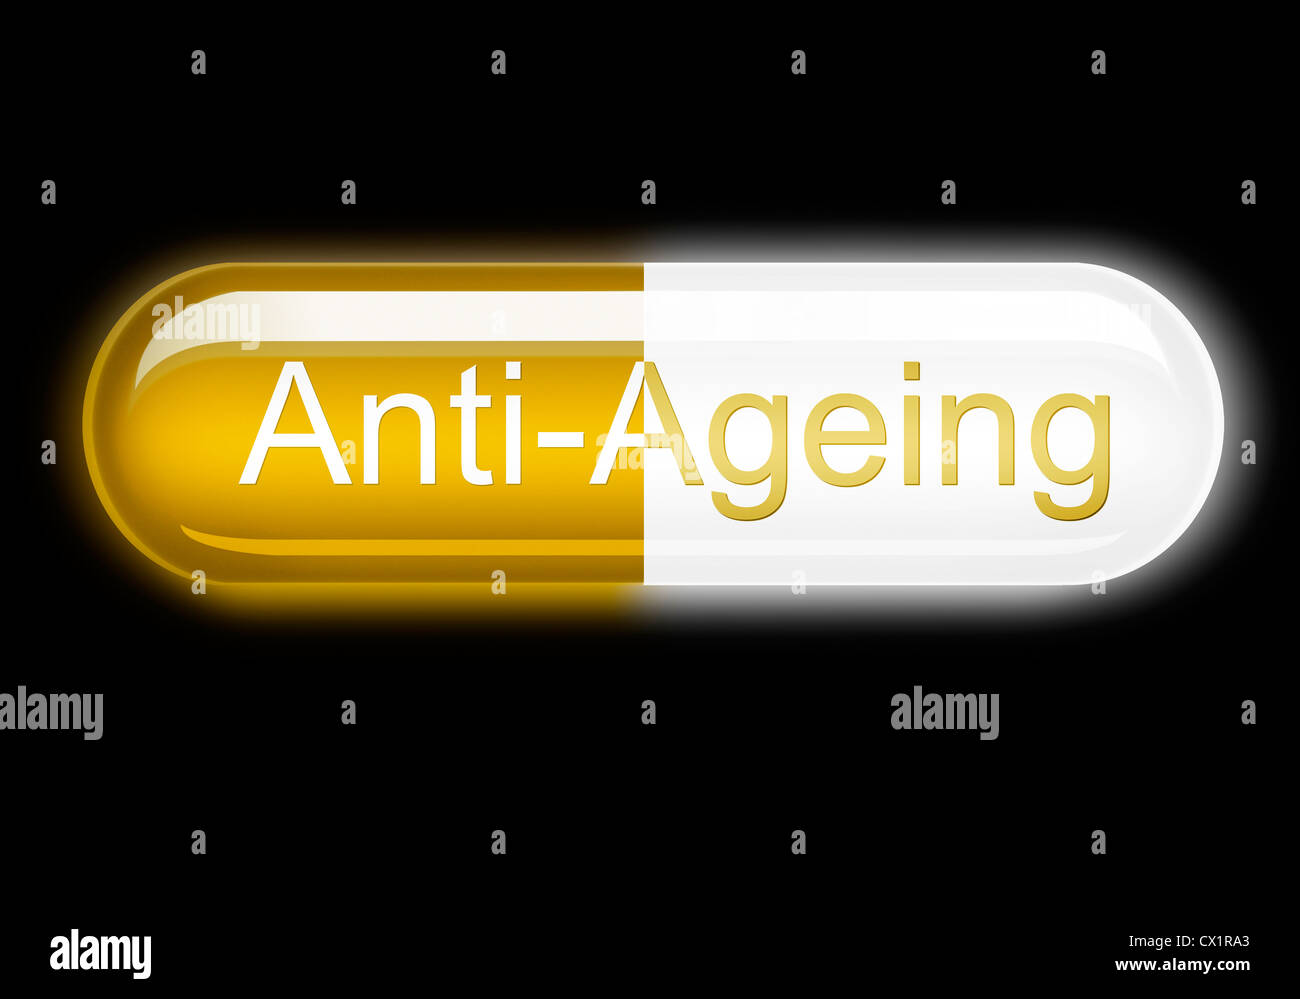 Abbildung eines glühenden Anti-Aging-Kapsel auf schwarzem Hintergrund. Konzept Bild Stockfoto